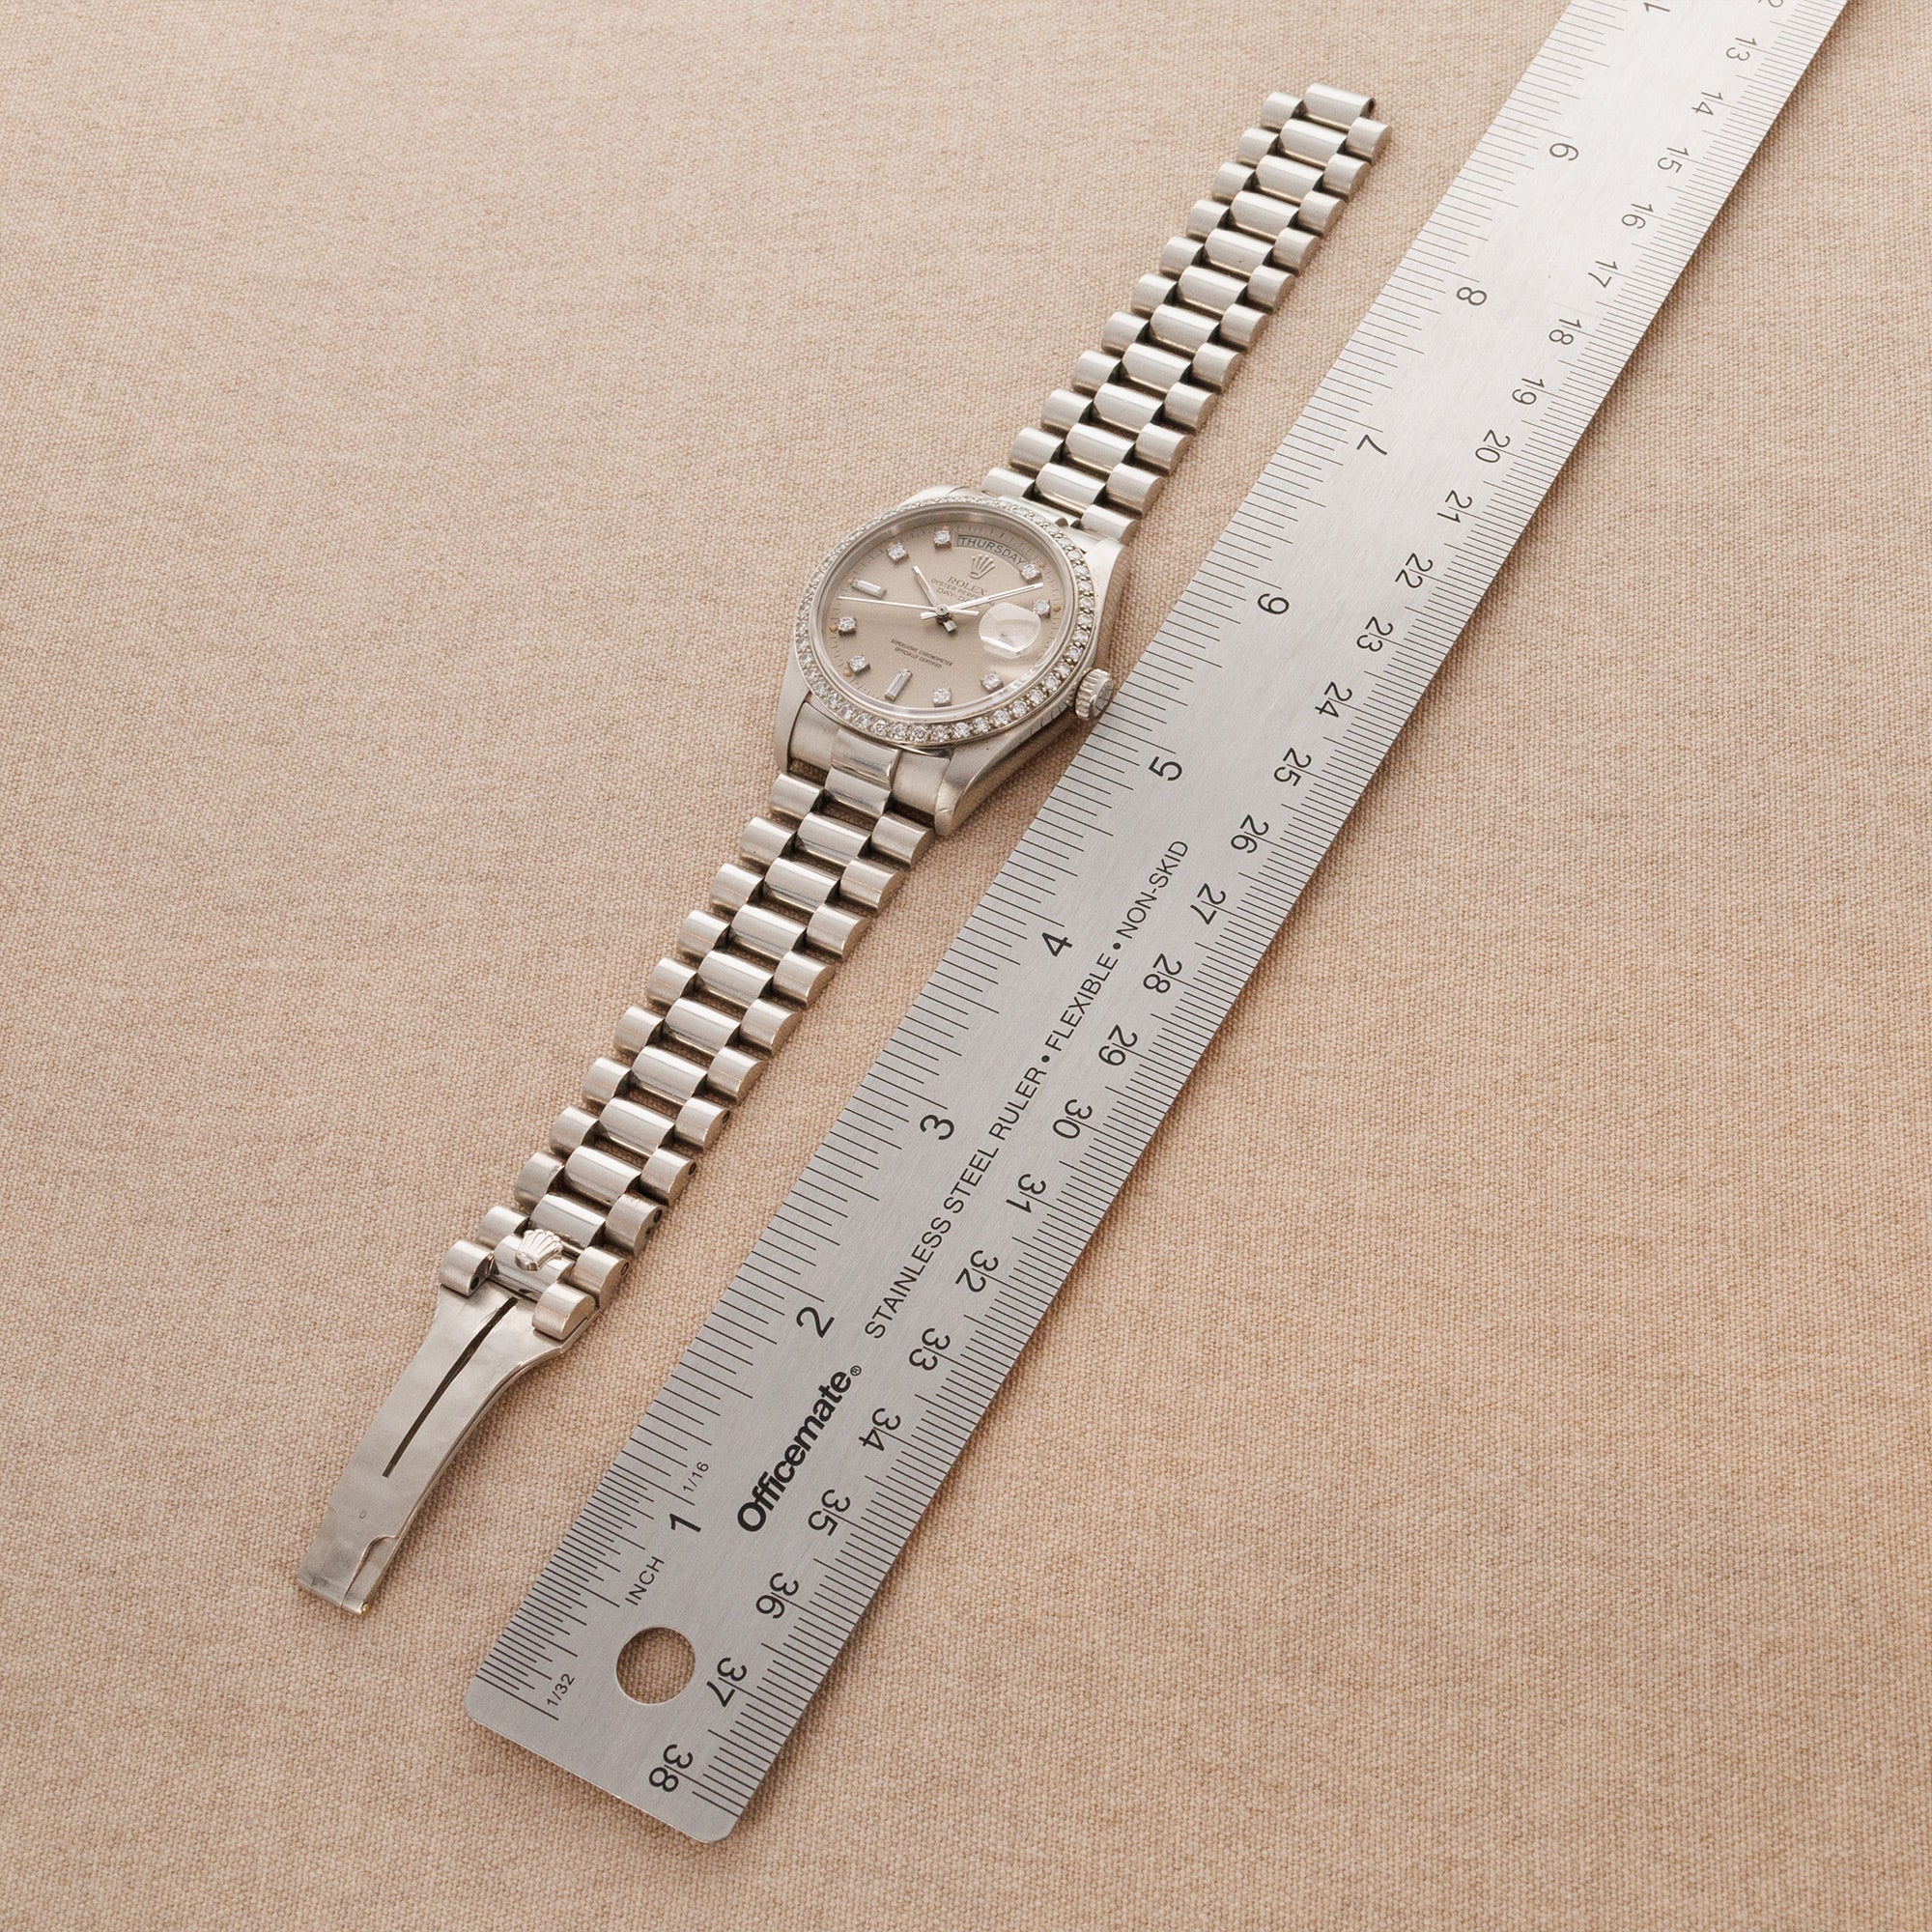 Rolex - Rolex Platinum Day-Date Ref. 18046 - The Keystone Watches